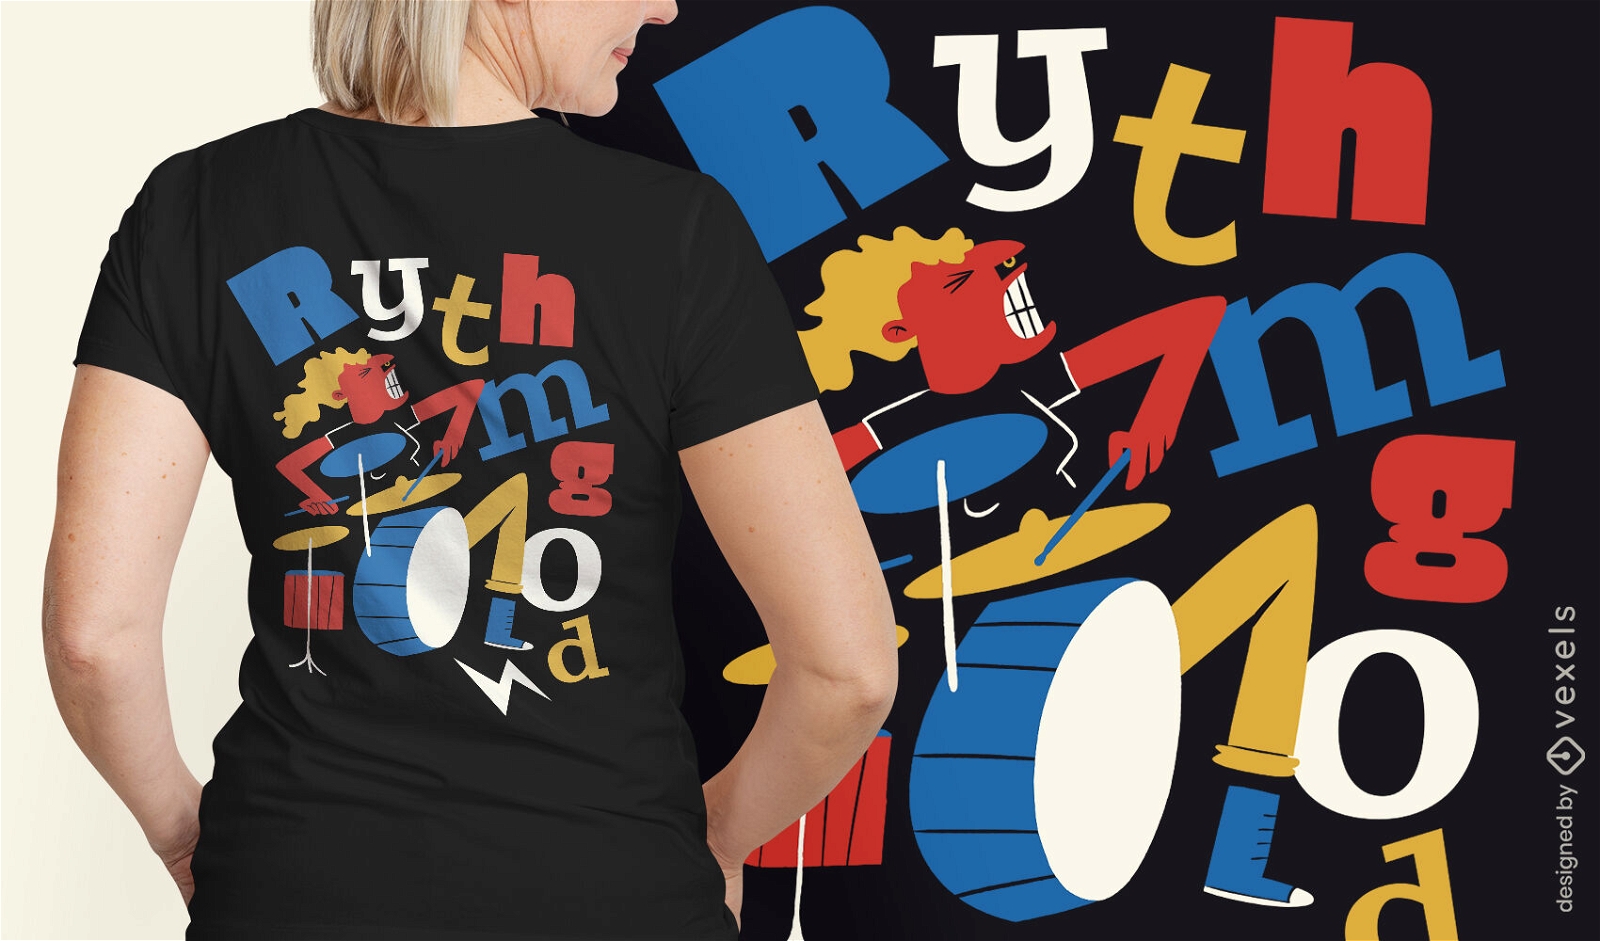 Rockstar tocando bateria design de t-shirt de música